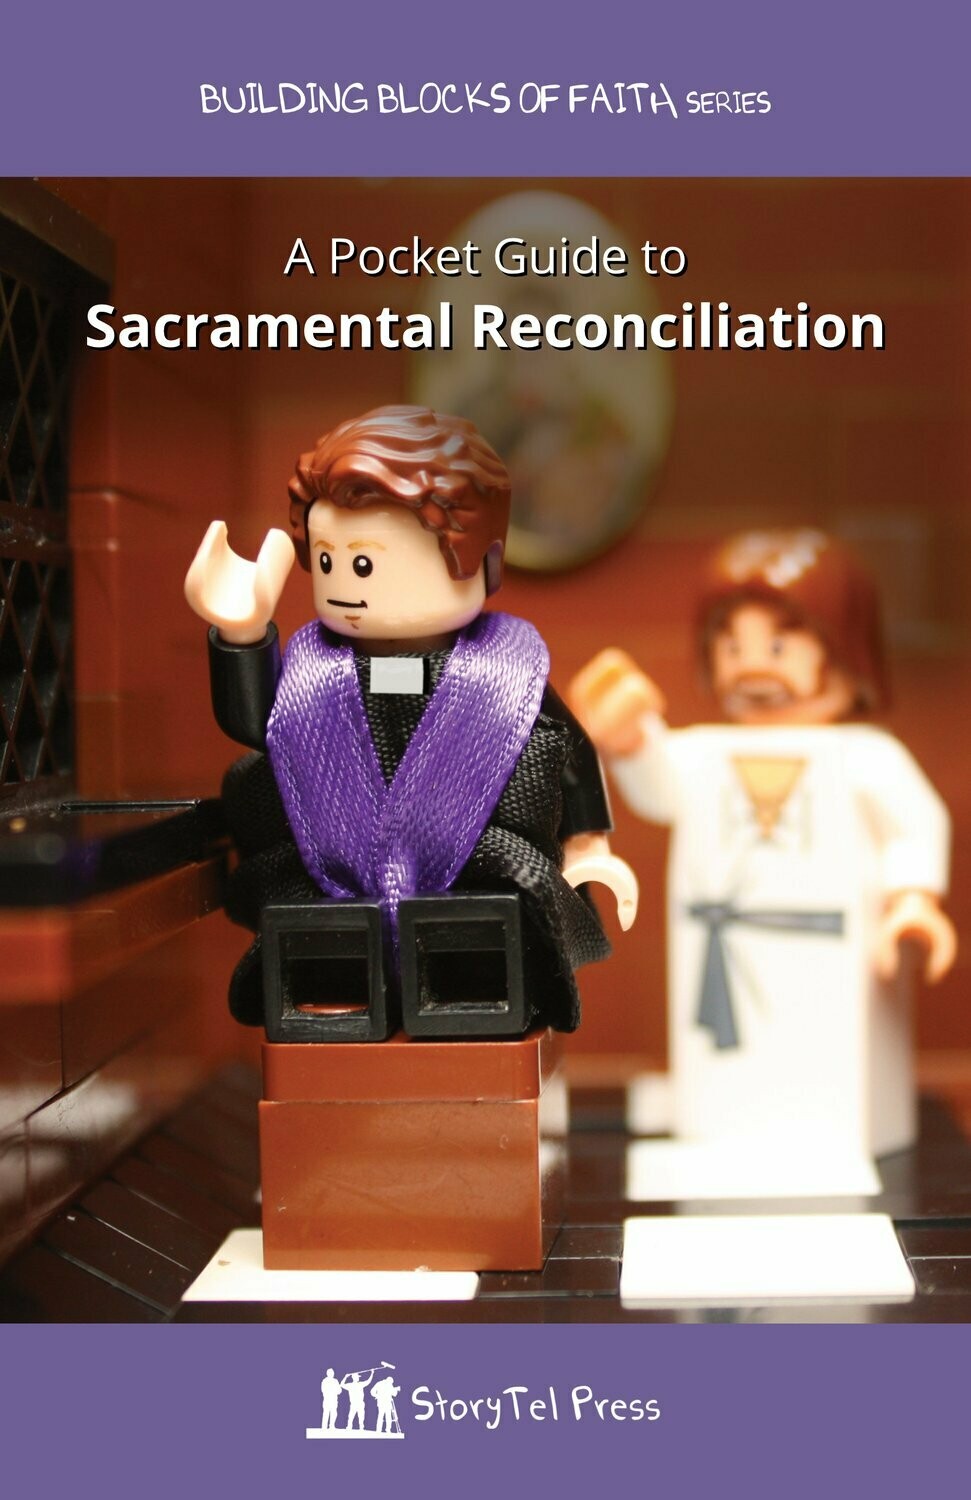 Pocket Guide to Sacramental Reconciliation